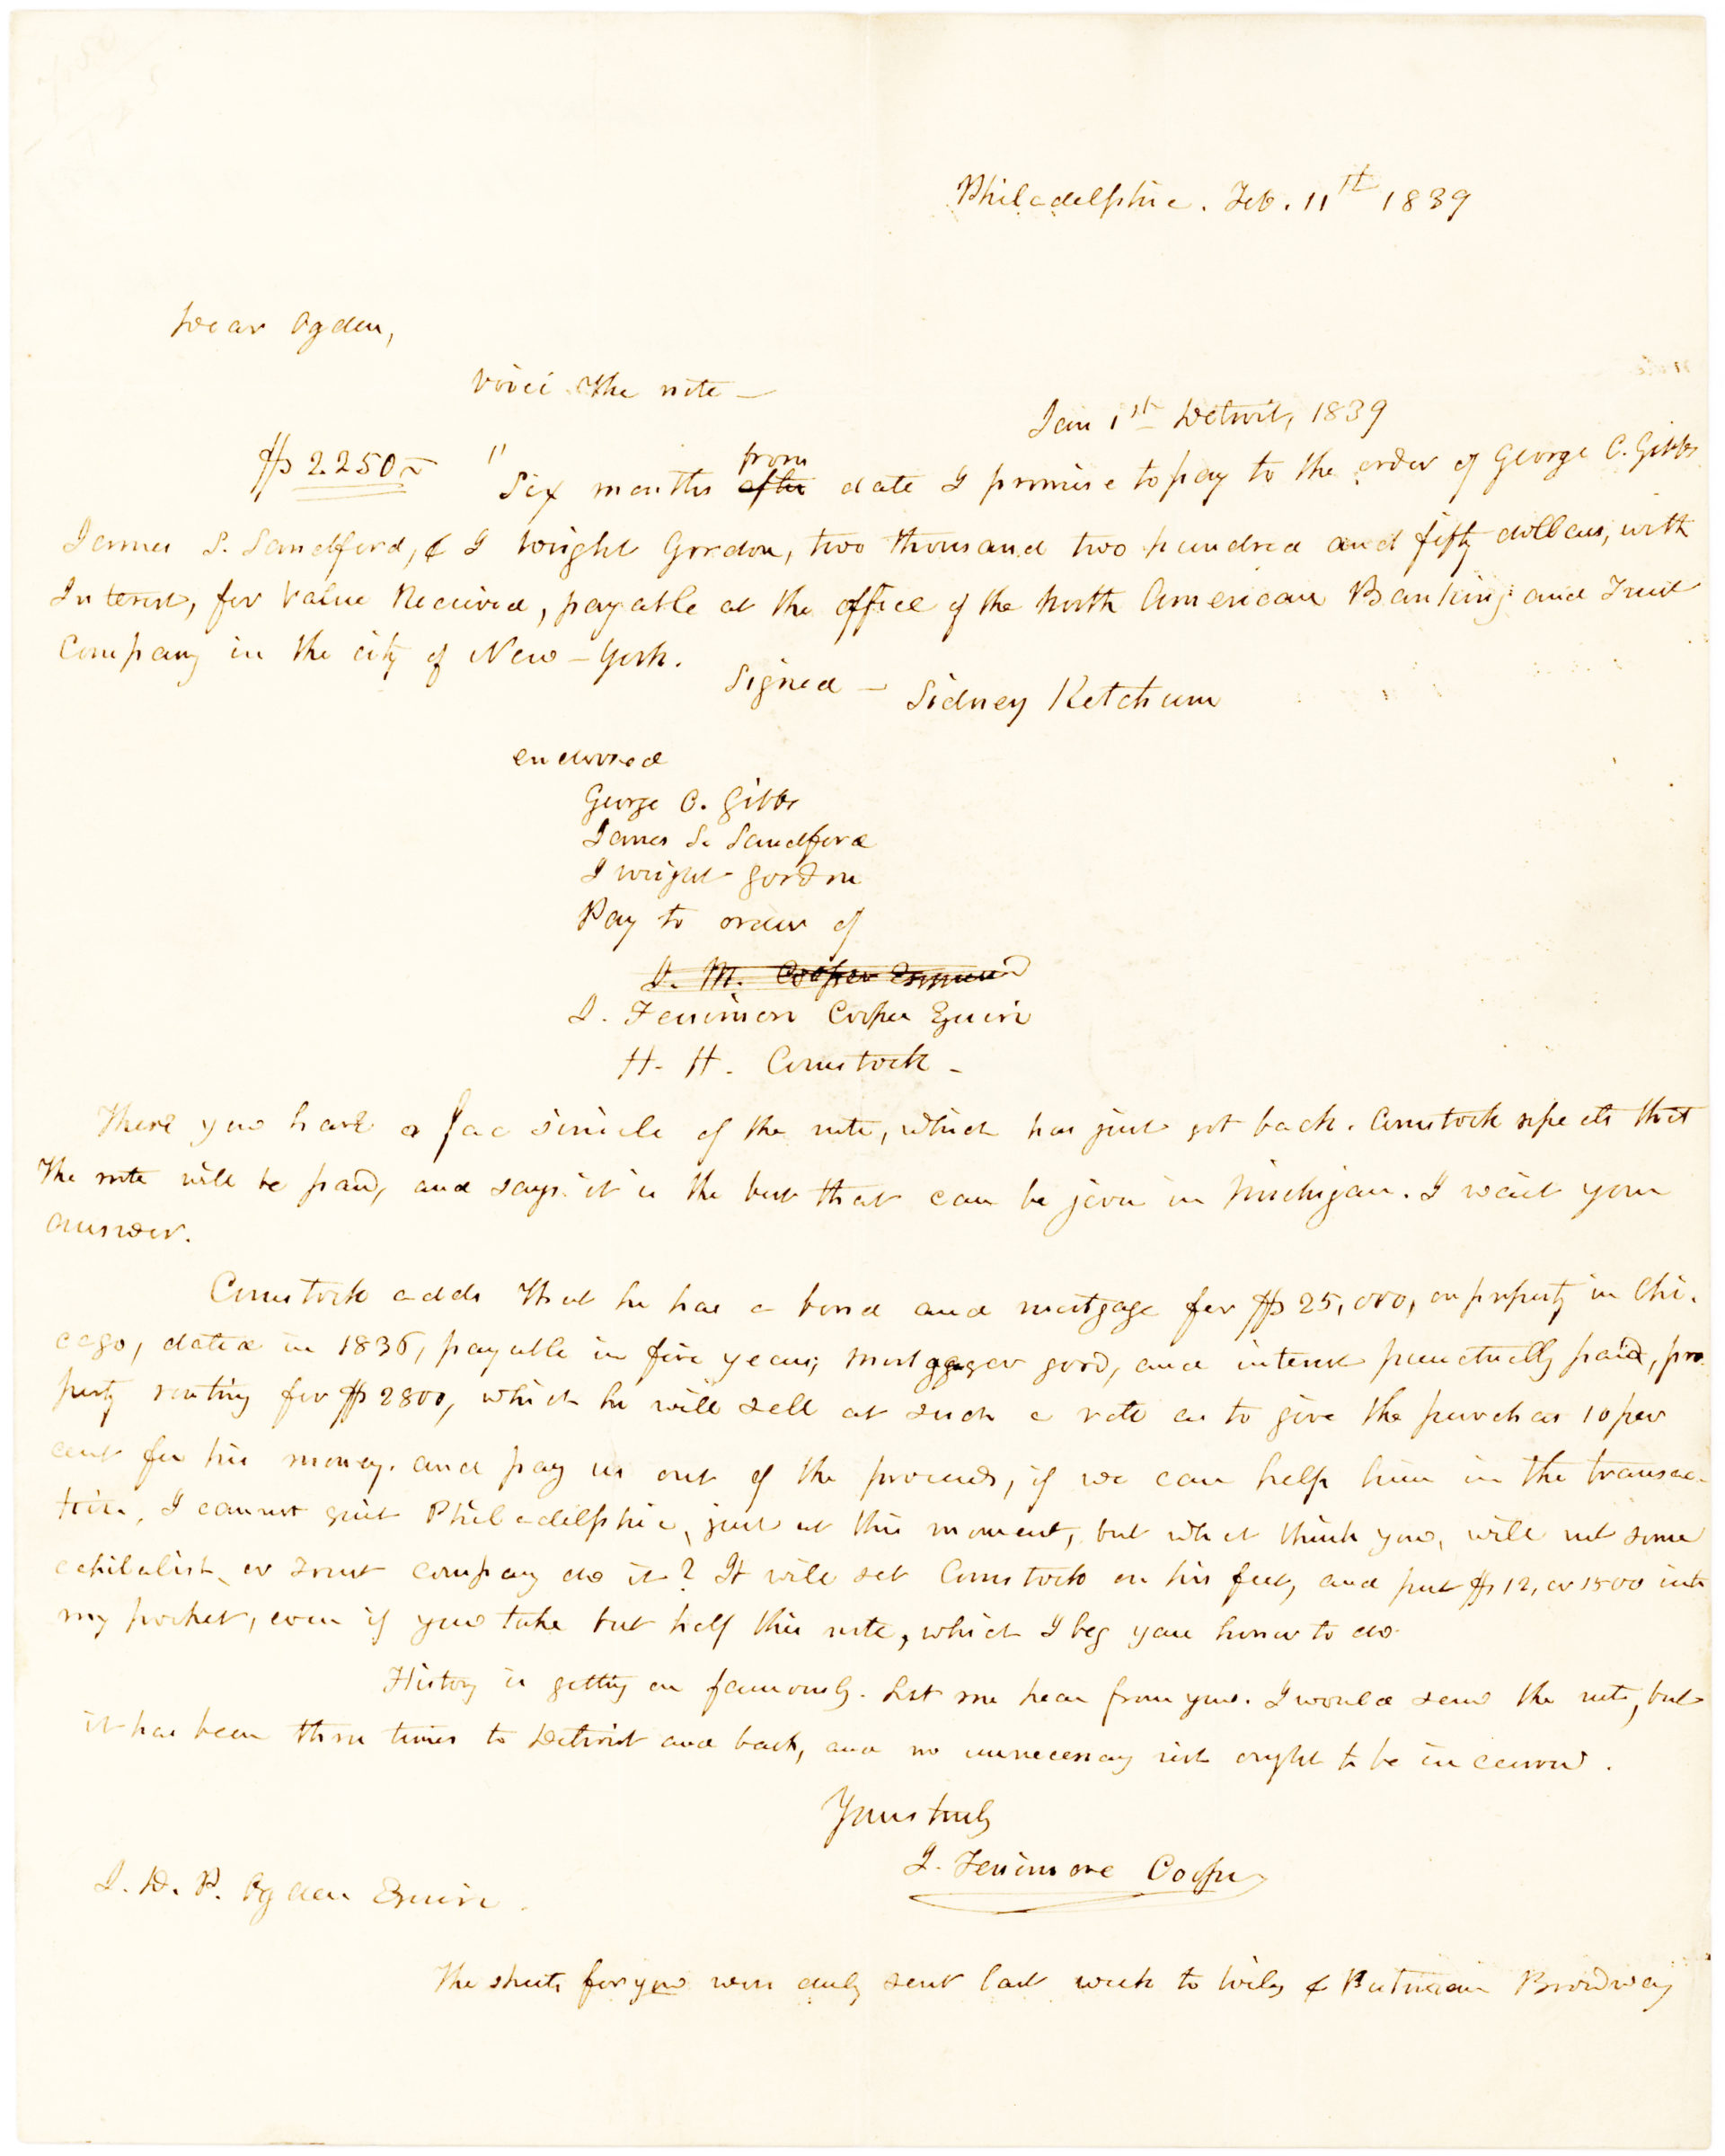 Address leaf of Cooper letter